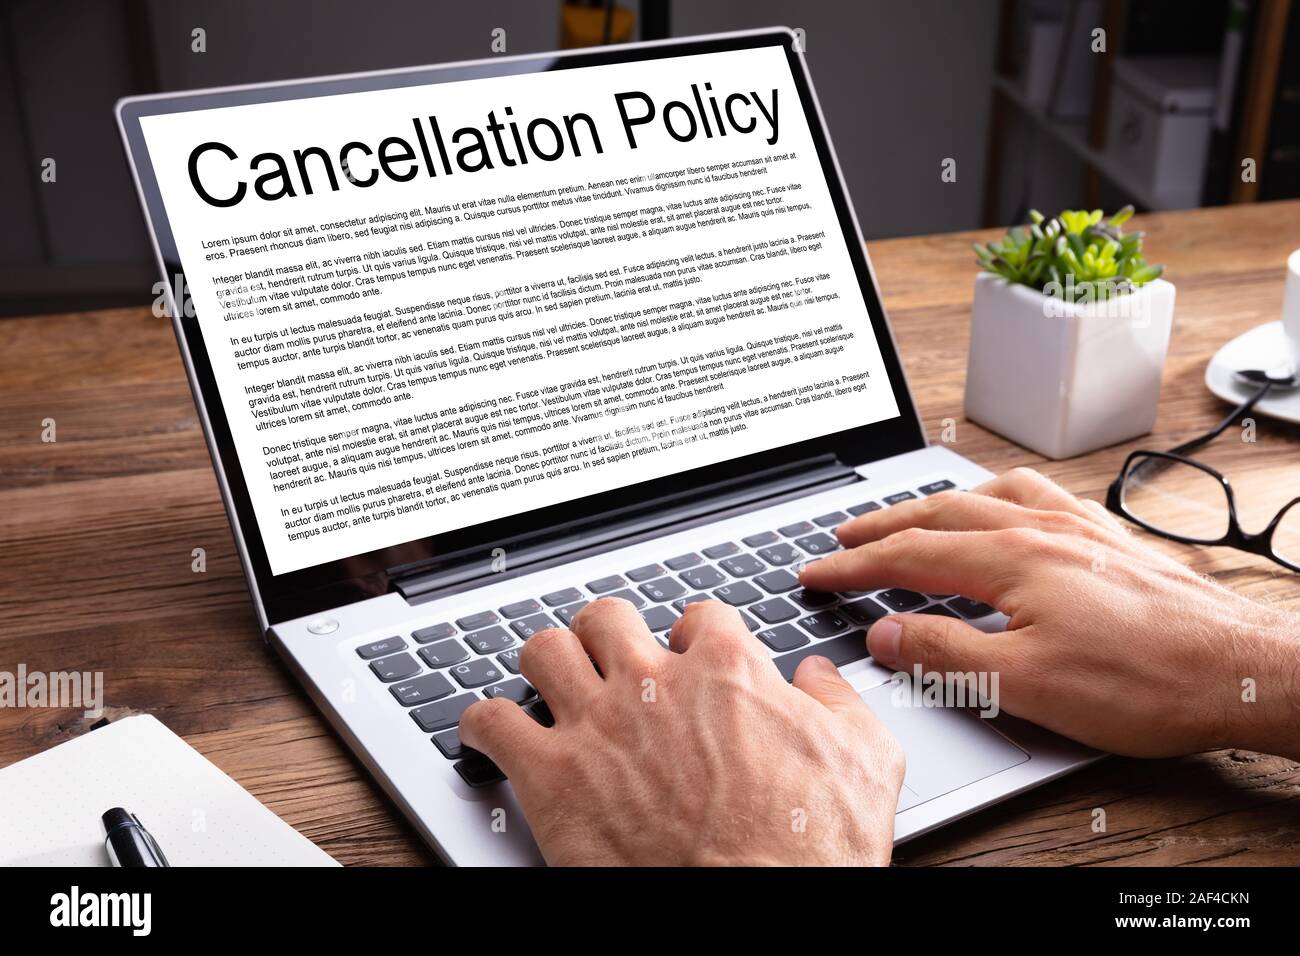 Uomo Accordo di lettura della Politica di Cancellazione su schermo laptop sulla scrivania di legno in ufficio Foto Stock